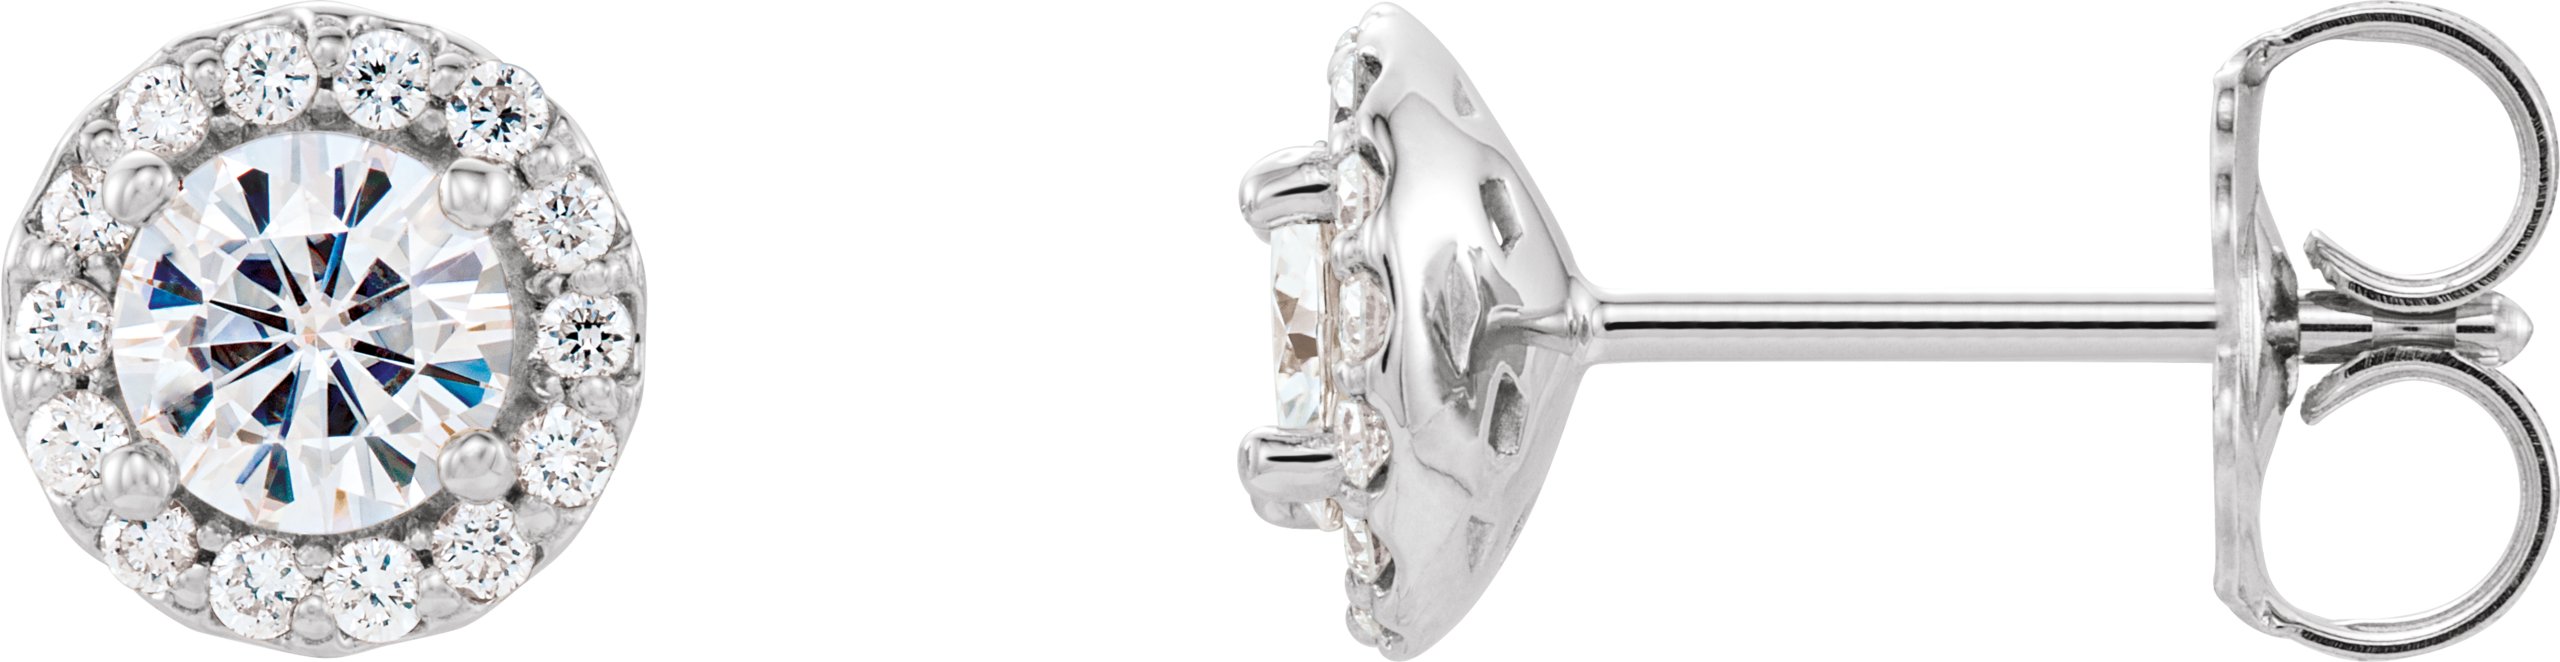 14K White 4 mm Round Forever One Moissanite and .125 CTW Diamond Earrings Ref. 12816028